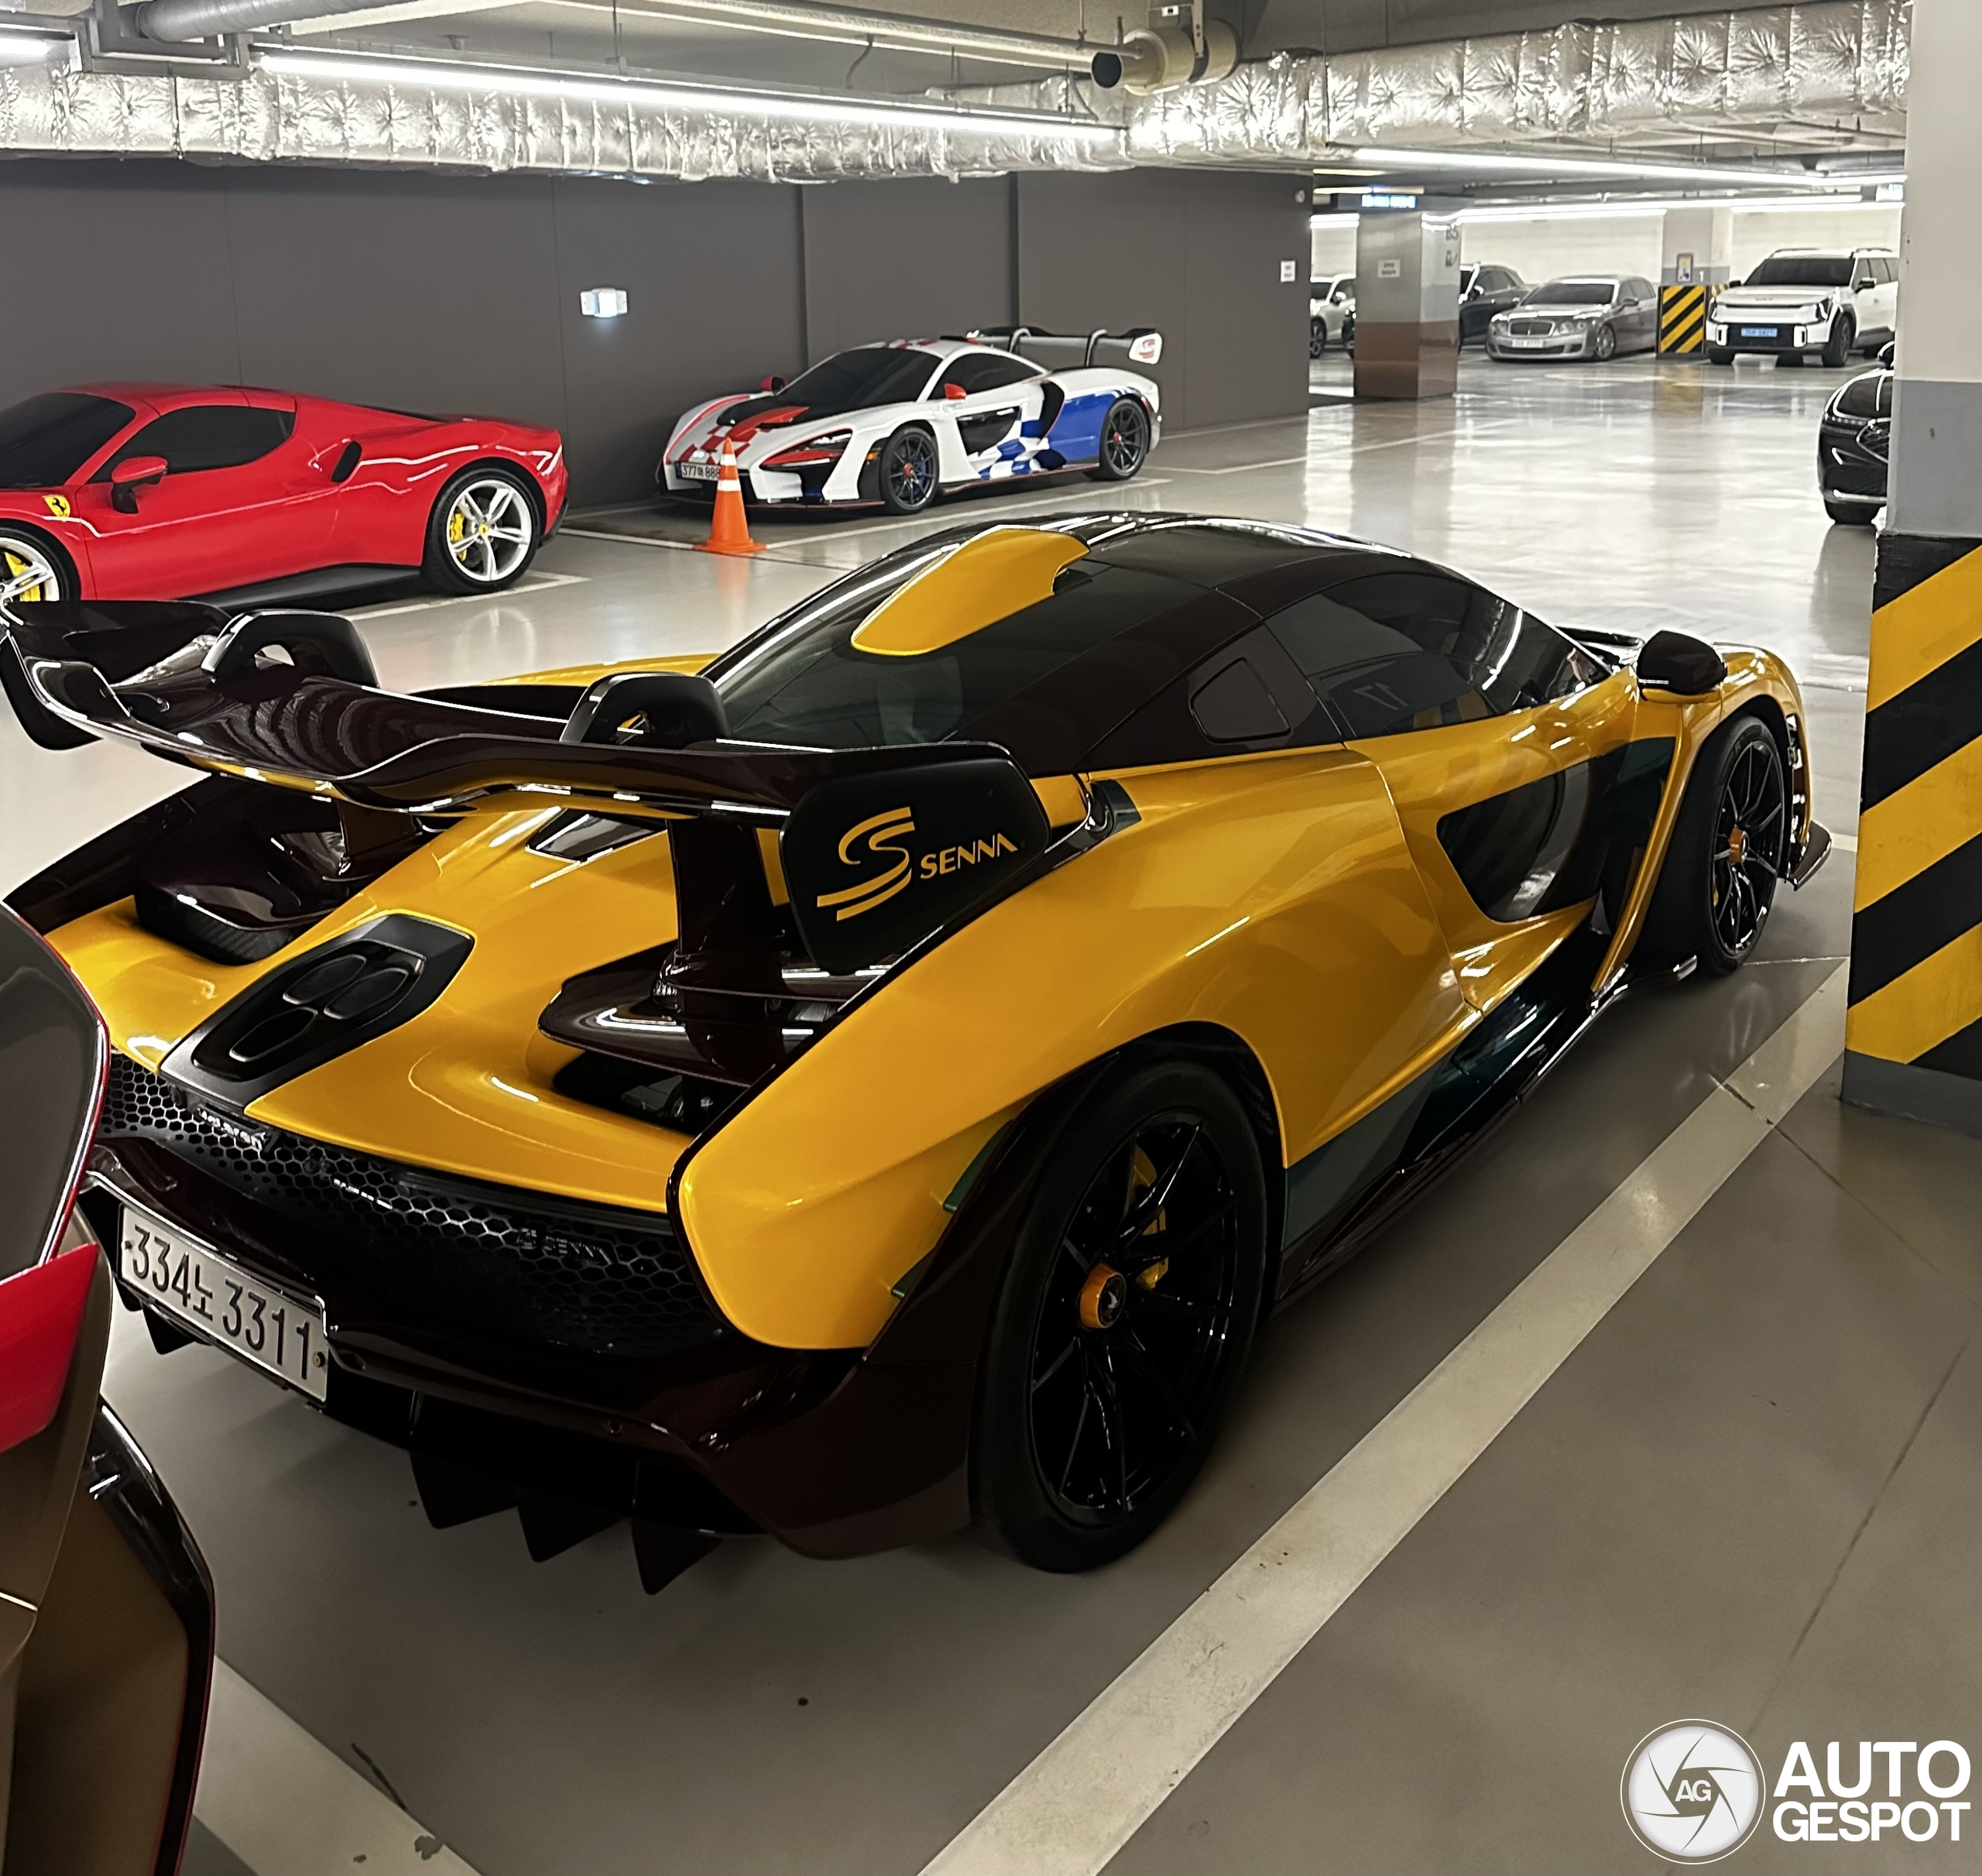 Aziaten hebben hun garages beter georganiseerd dan in Dubai